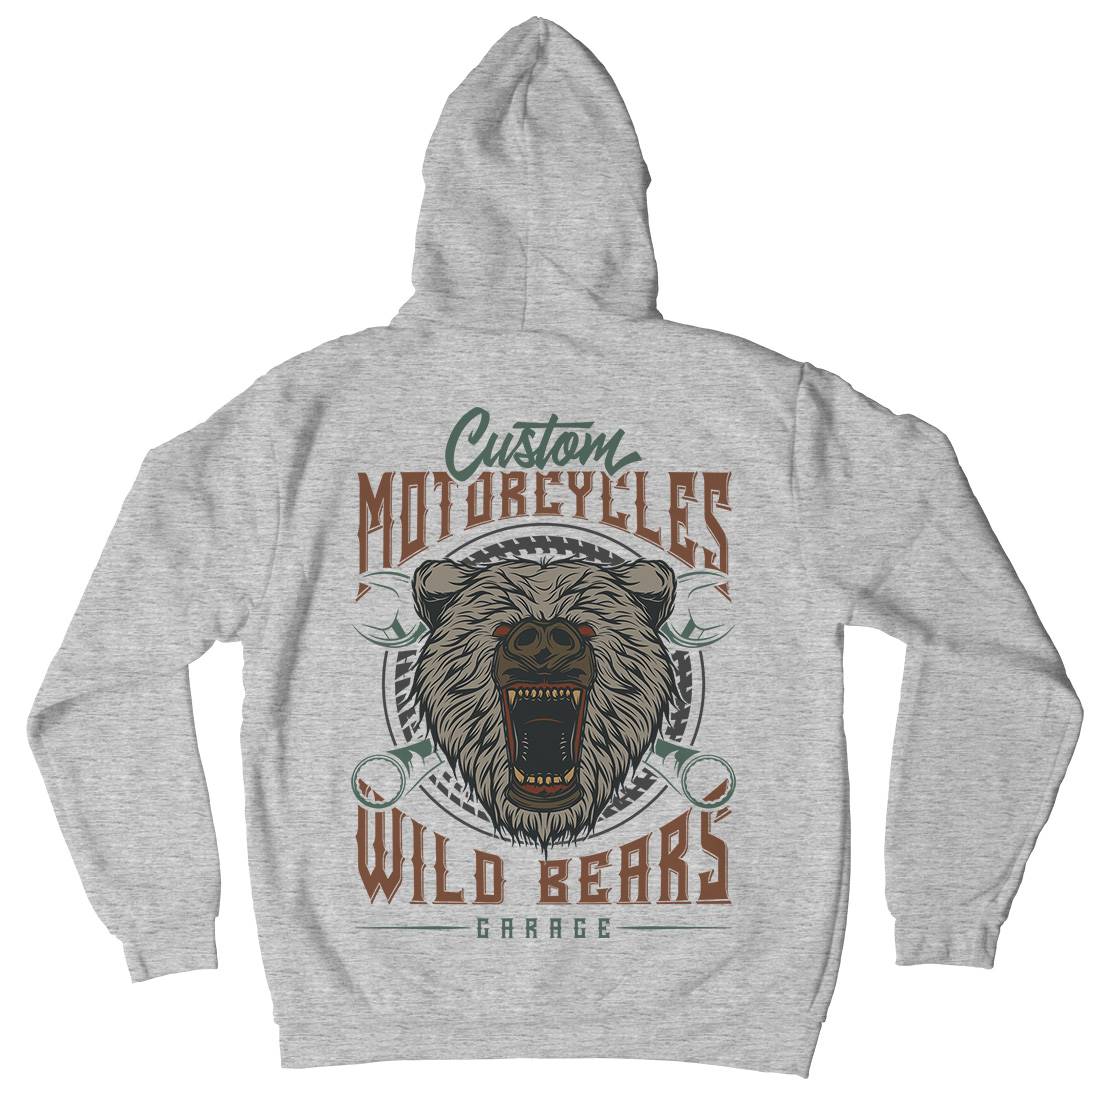 Wild Bears Mens Hoodie With Pocket Motorcycles B788